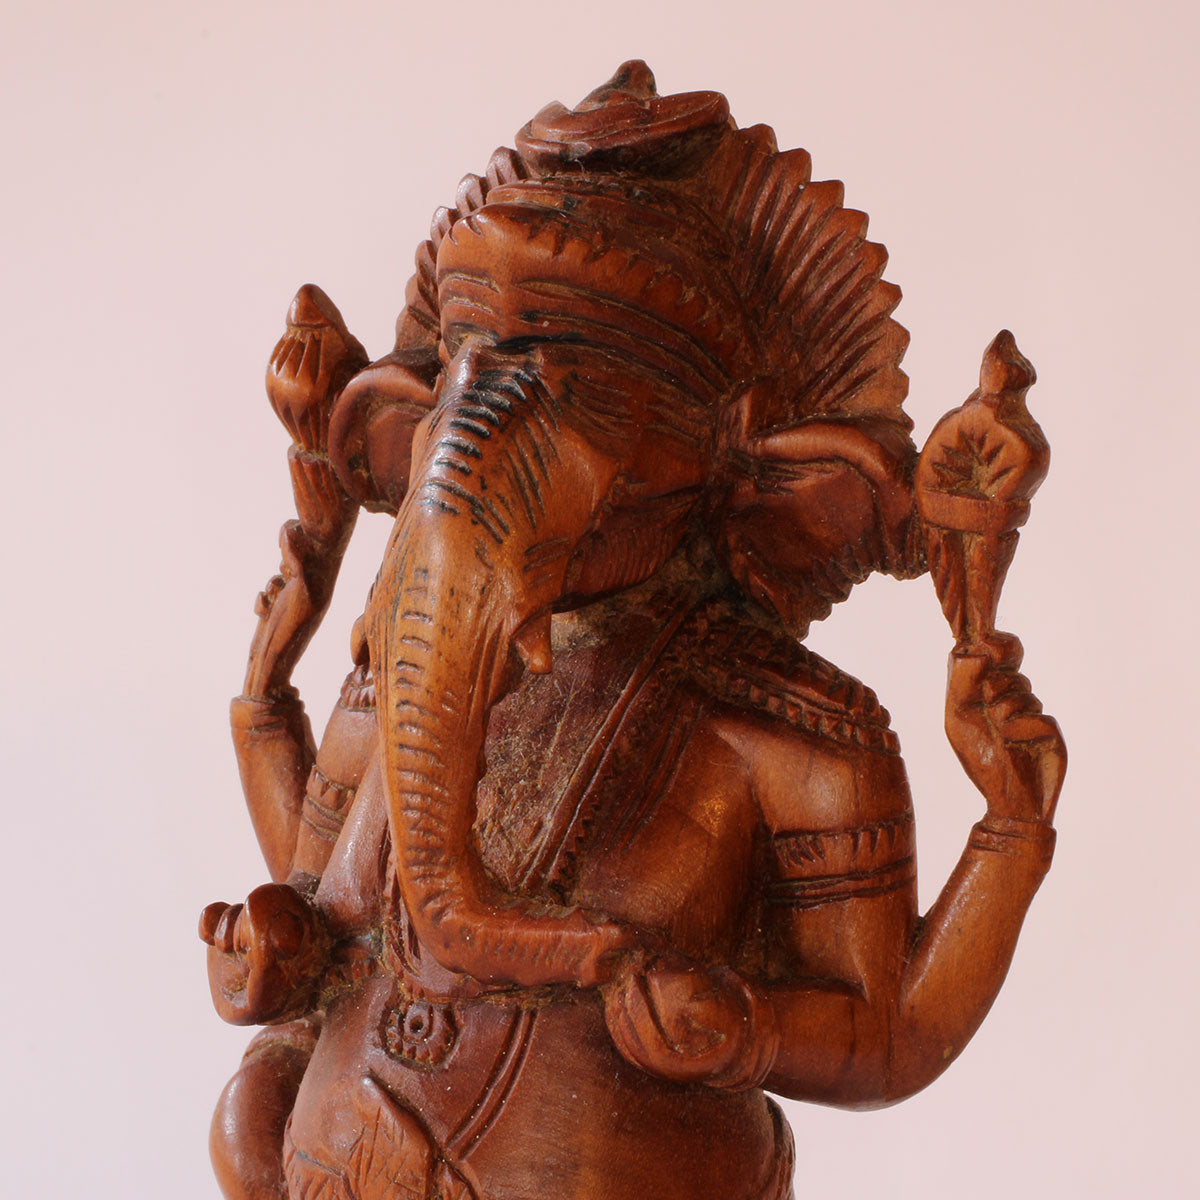 Ganesha kaldes også elefantguden pga. sit hoved